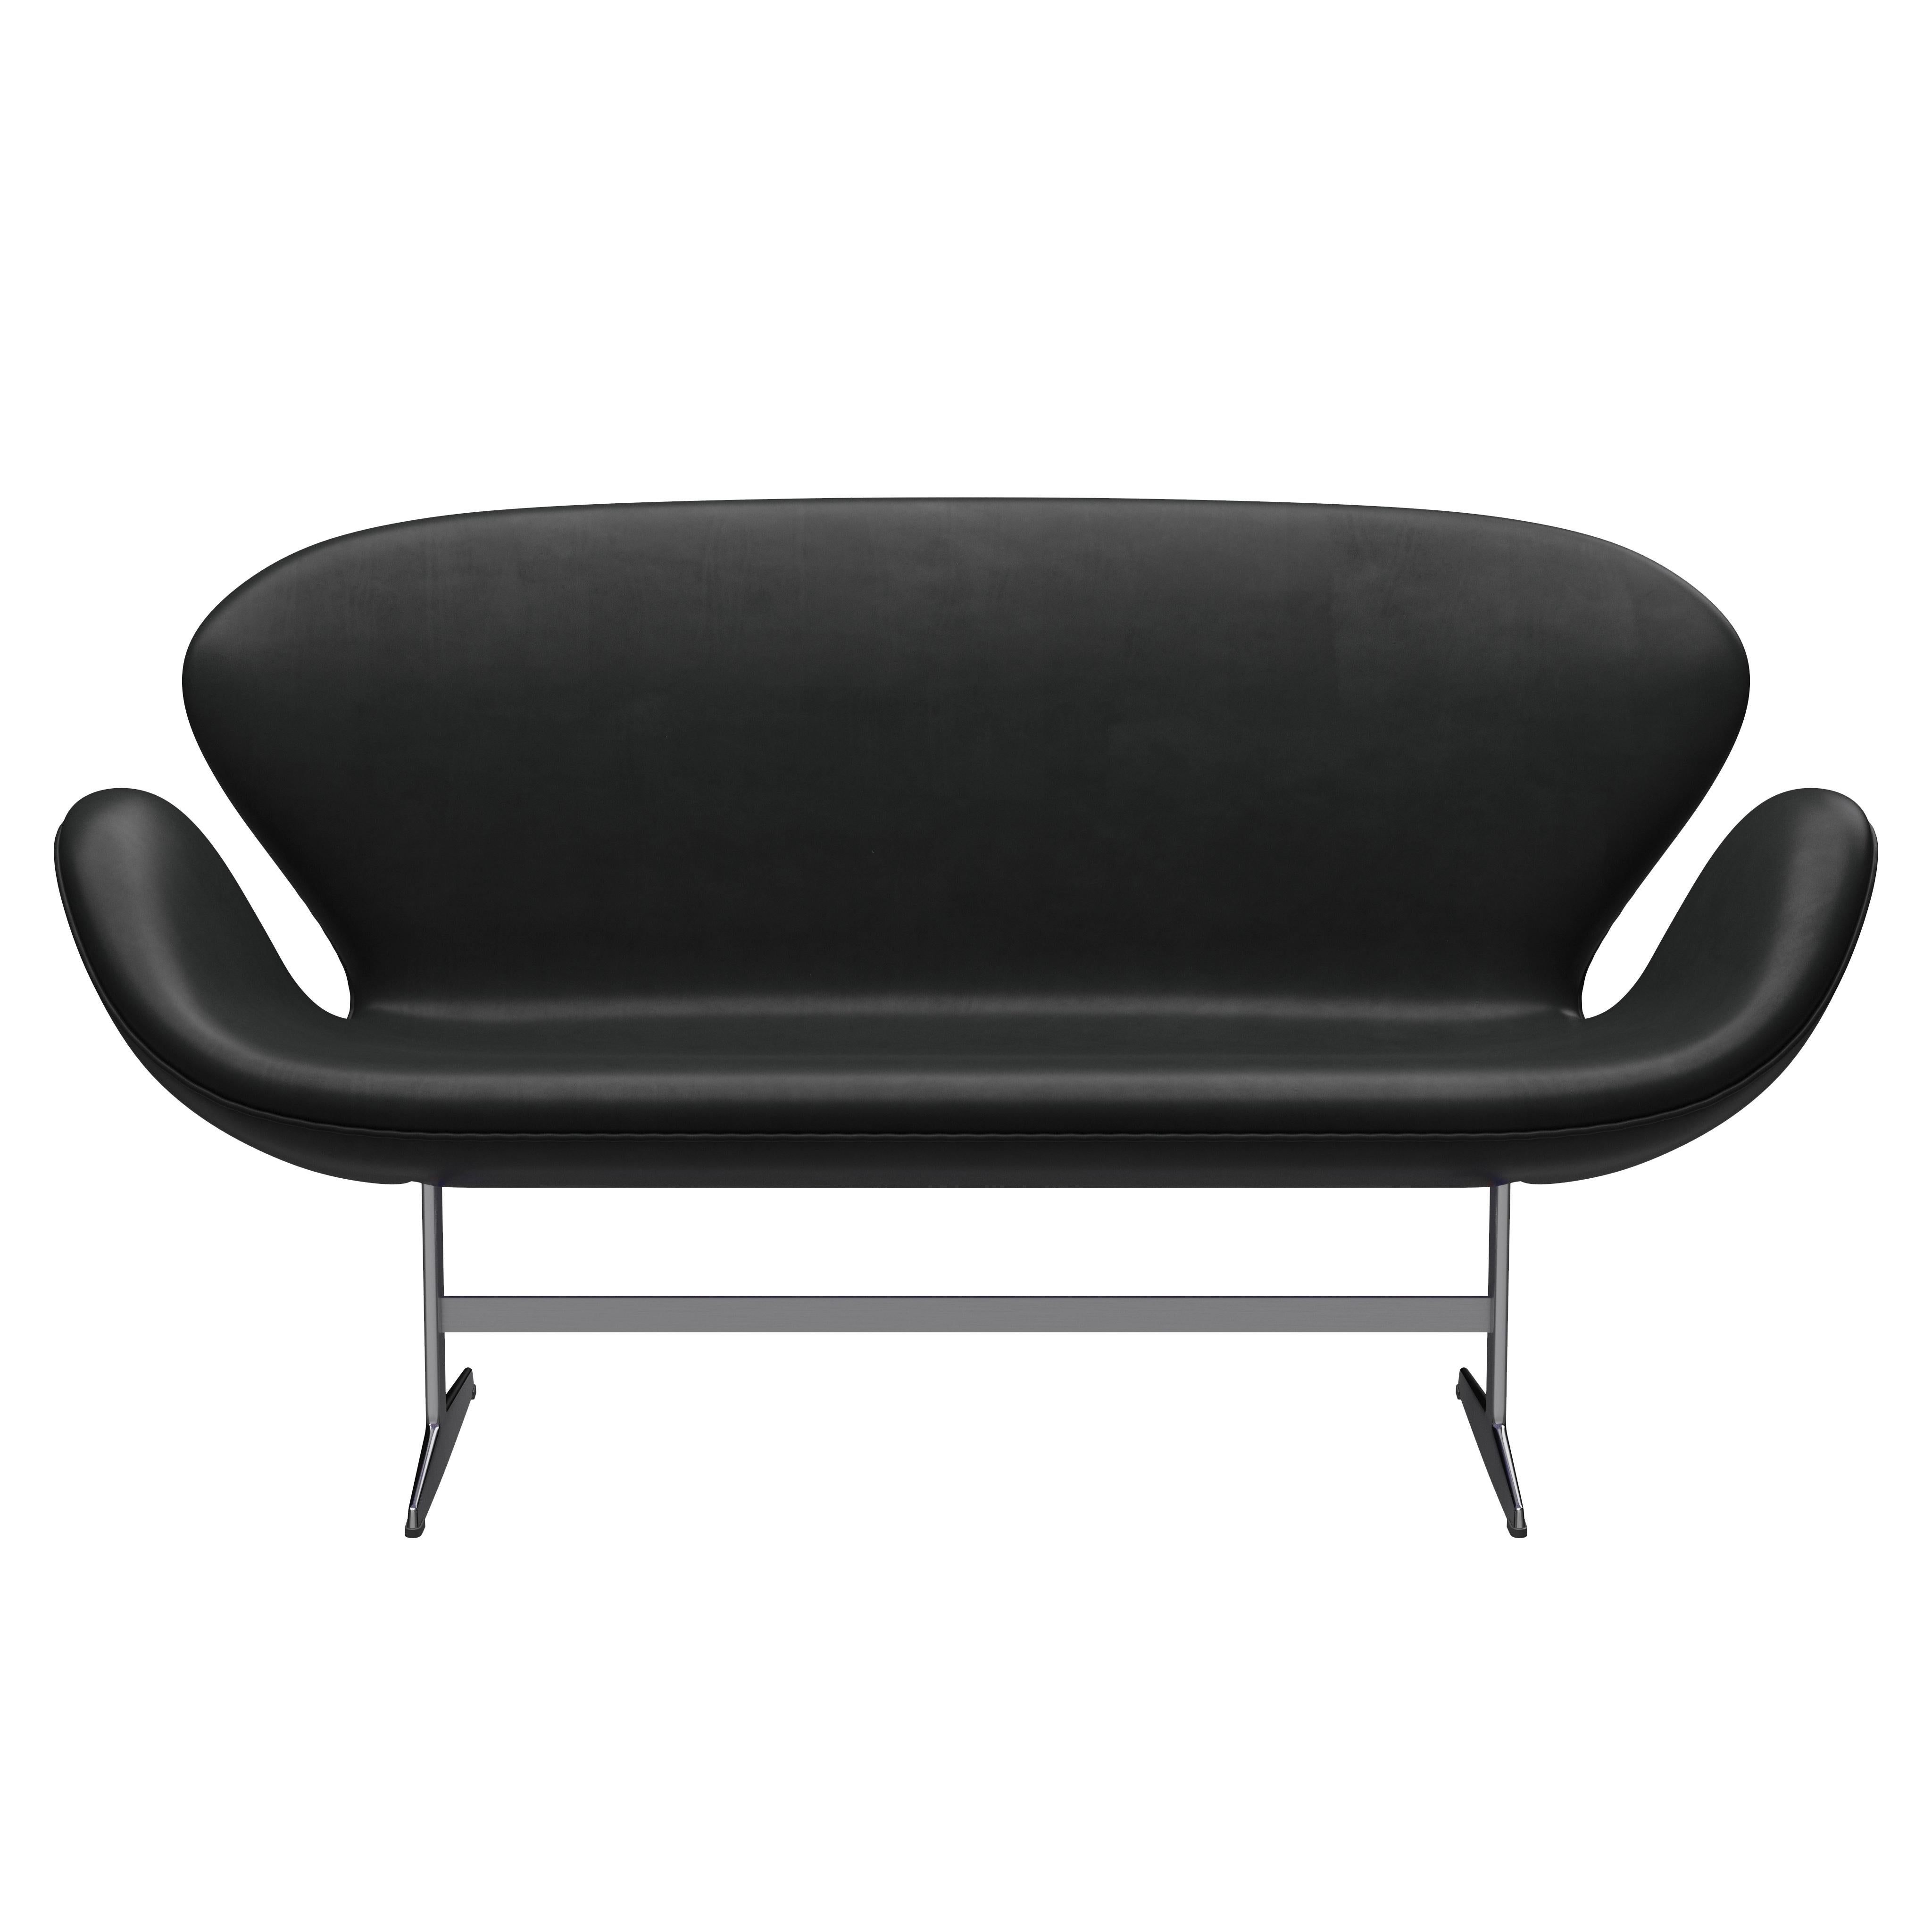 Arne Jacobsen 'Swan' Sofa for Fritz Hansen in Leather Upholstery (Cat. 5) For Sale 4